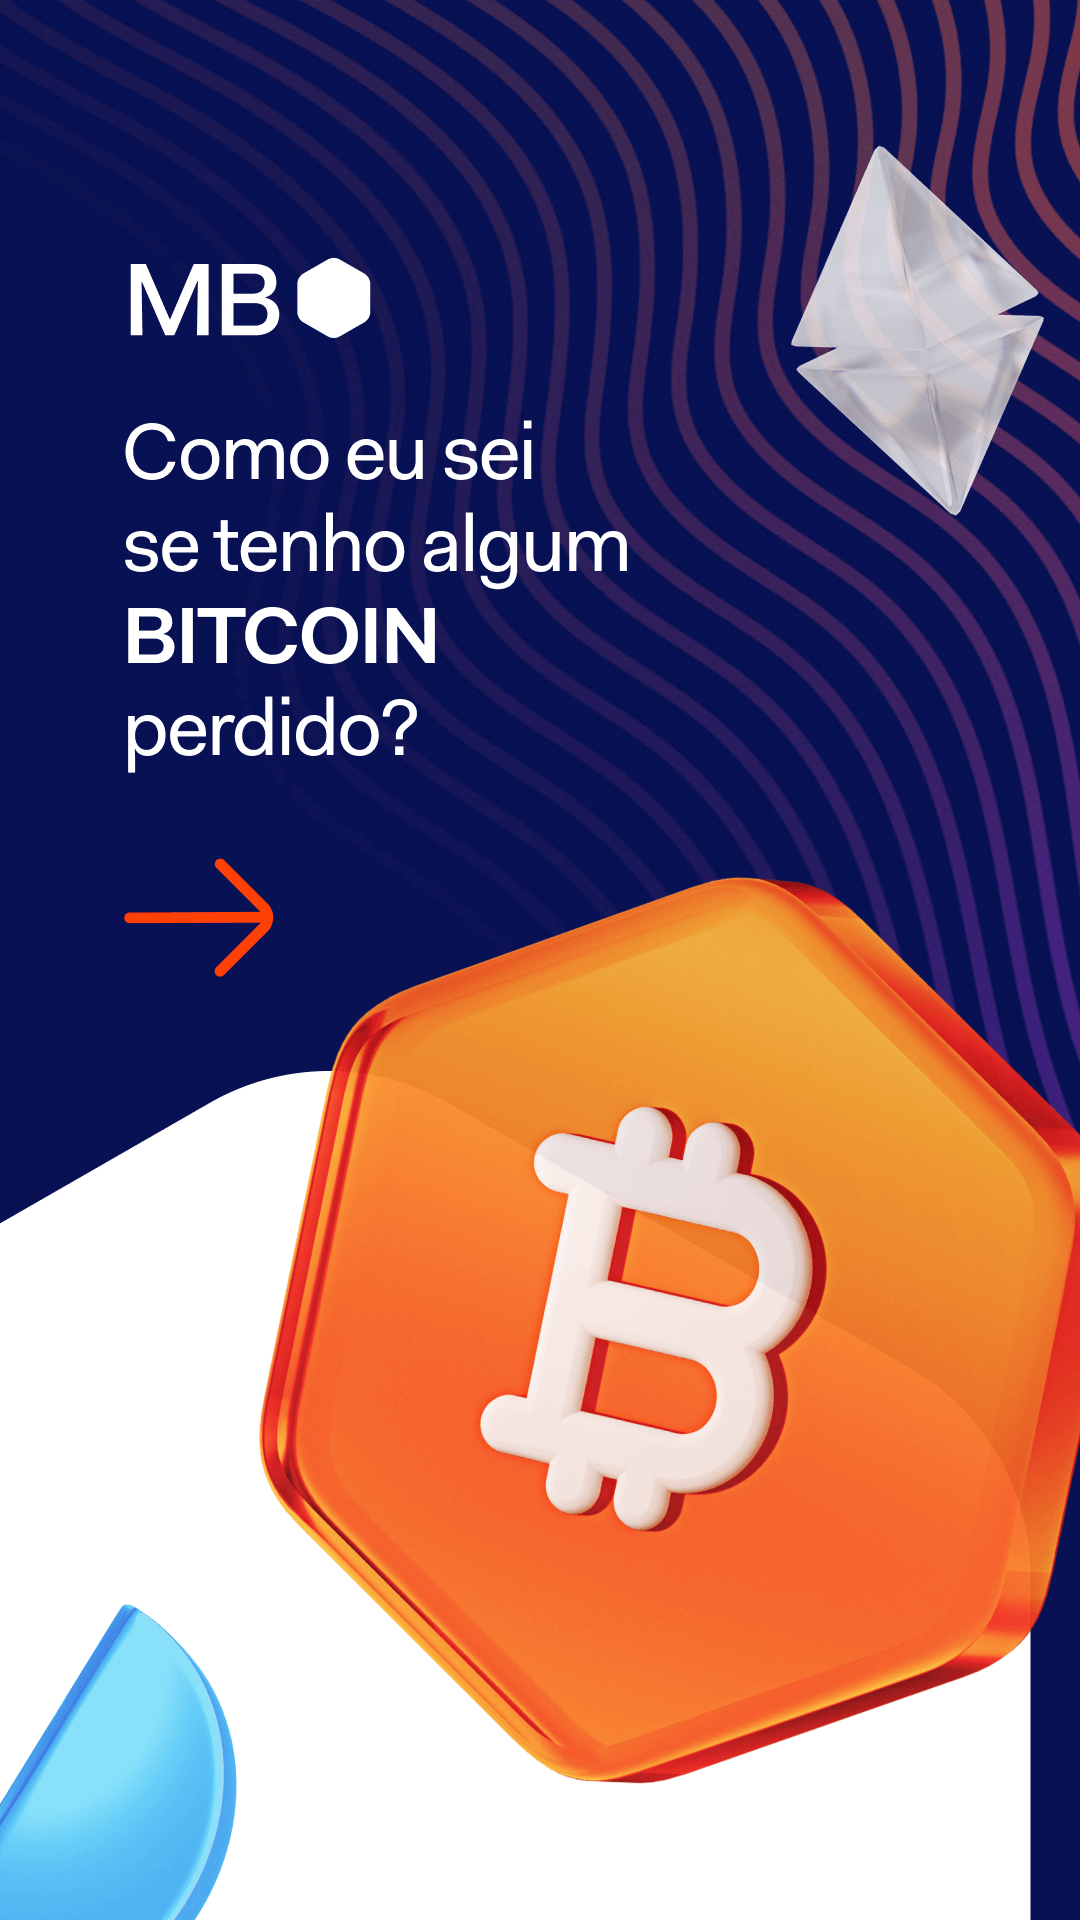 Como eu sei se tenho bitcoin? - Mercado Bitcoin - Economia Digital